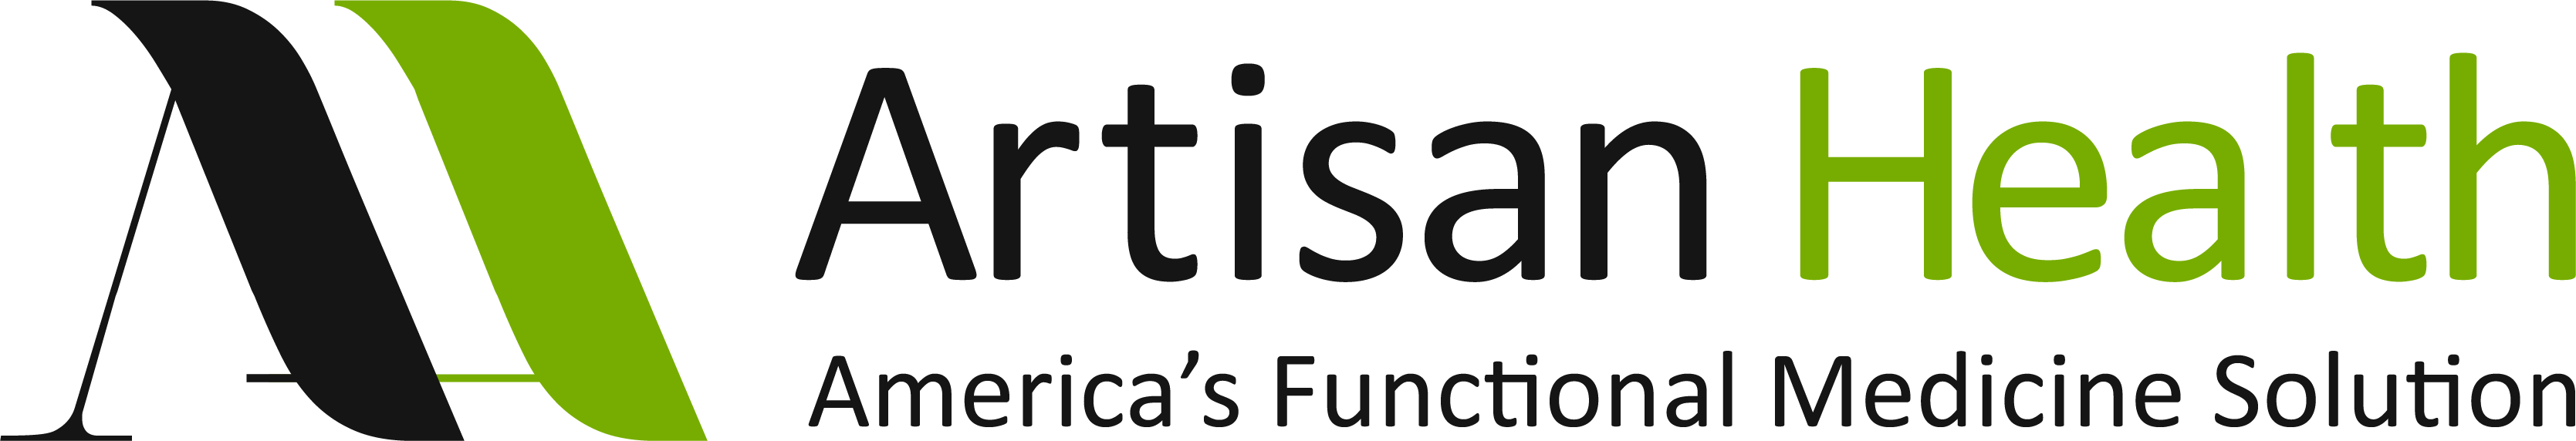 artisan health logo image